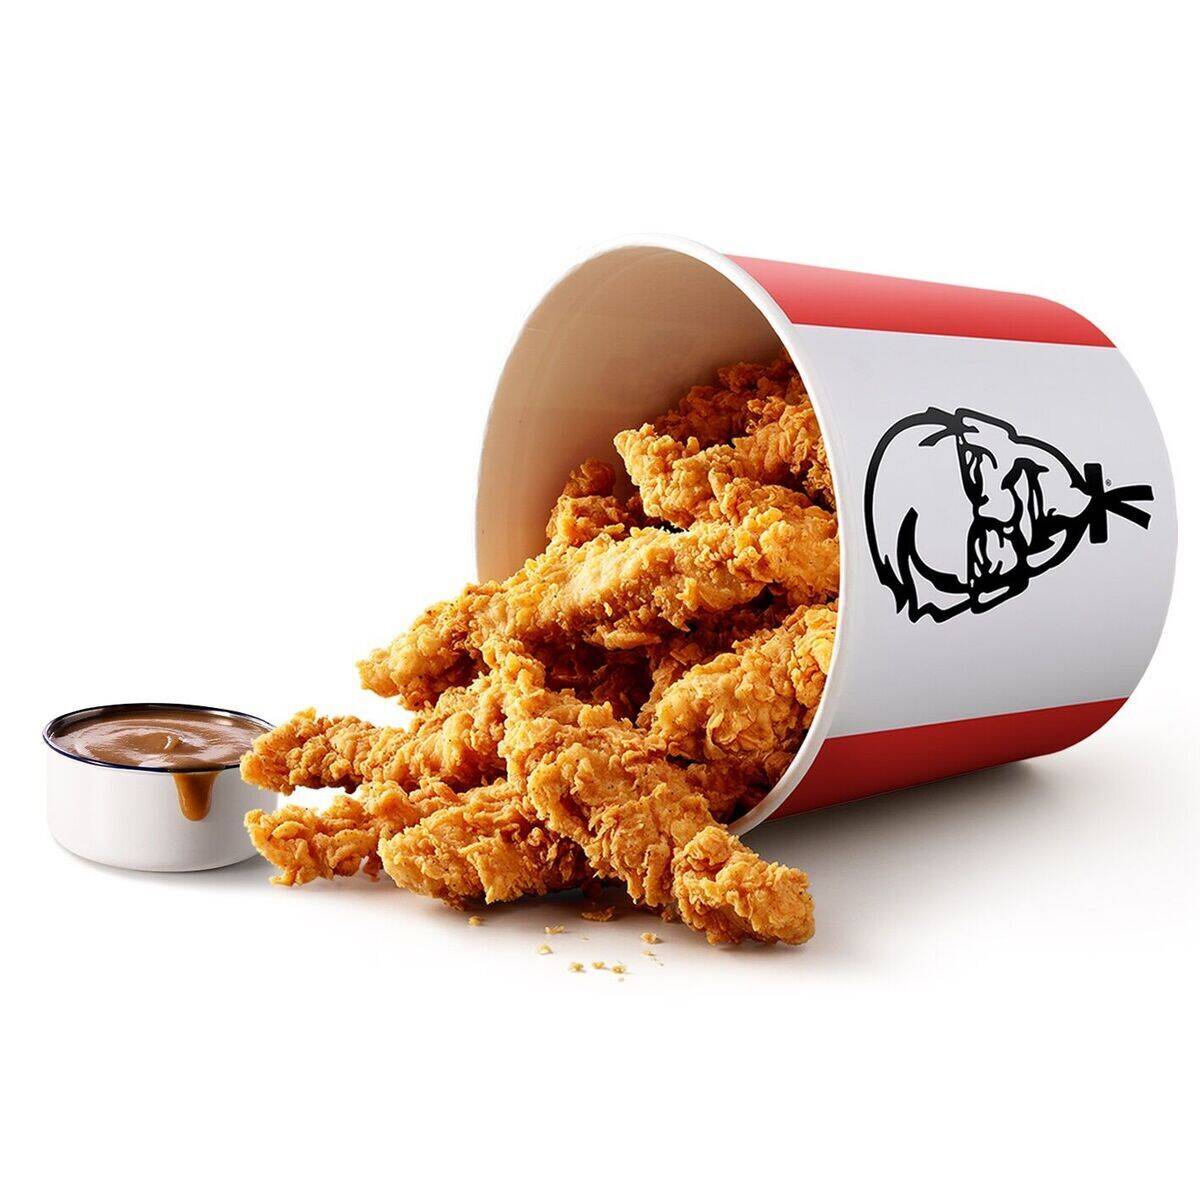 Noch alles echt: die realen Chicken Nuggets im berühmten KFC-Basket.